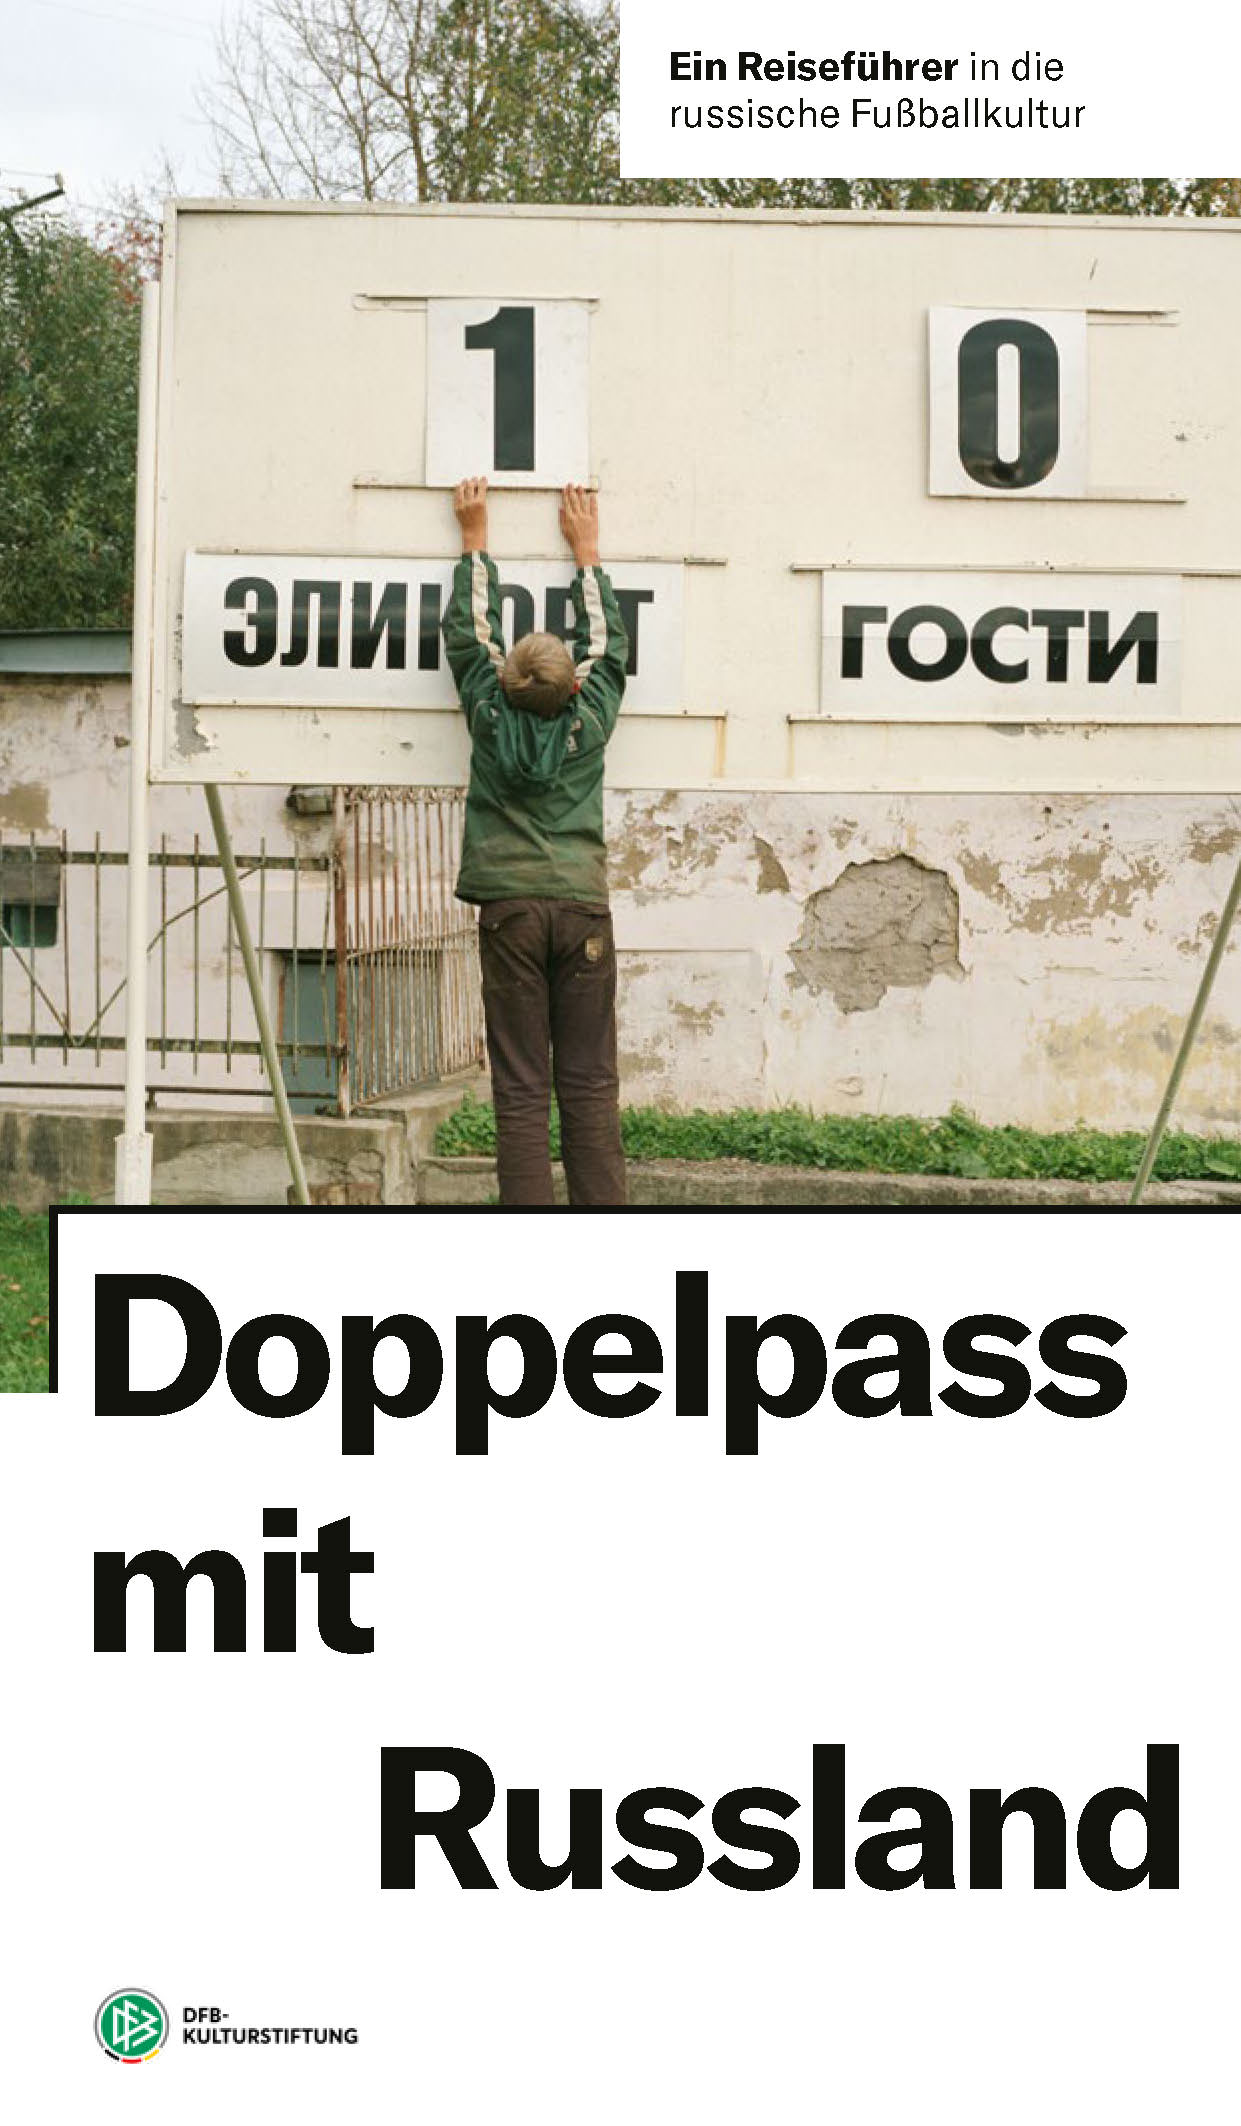 DFB-Kulturstiftung (Hrsg.): Doppelpass mit Russland